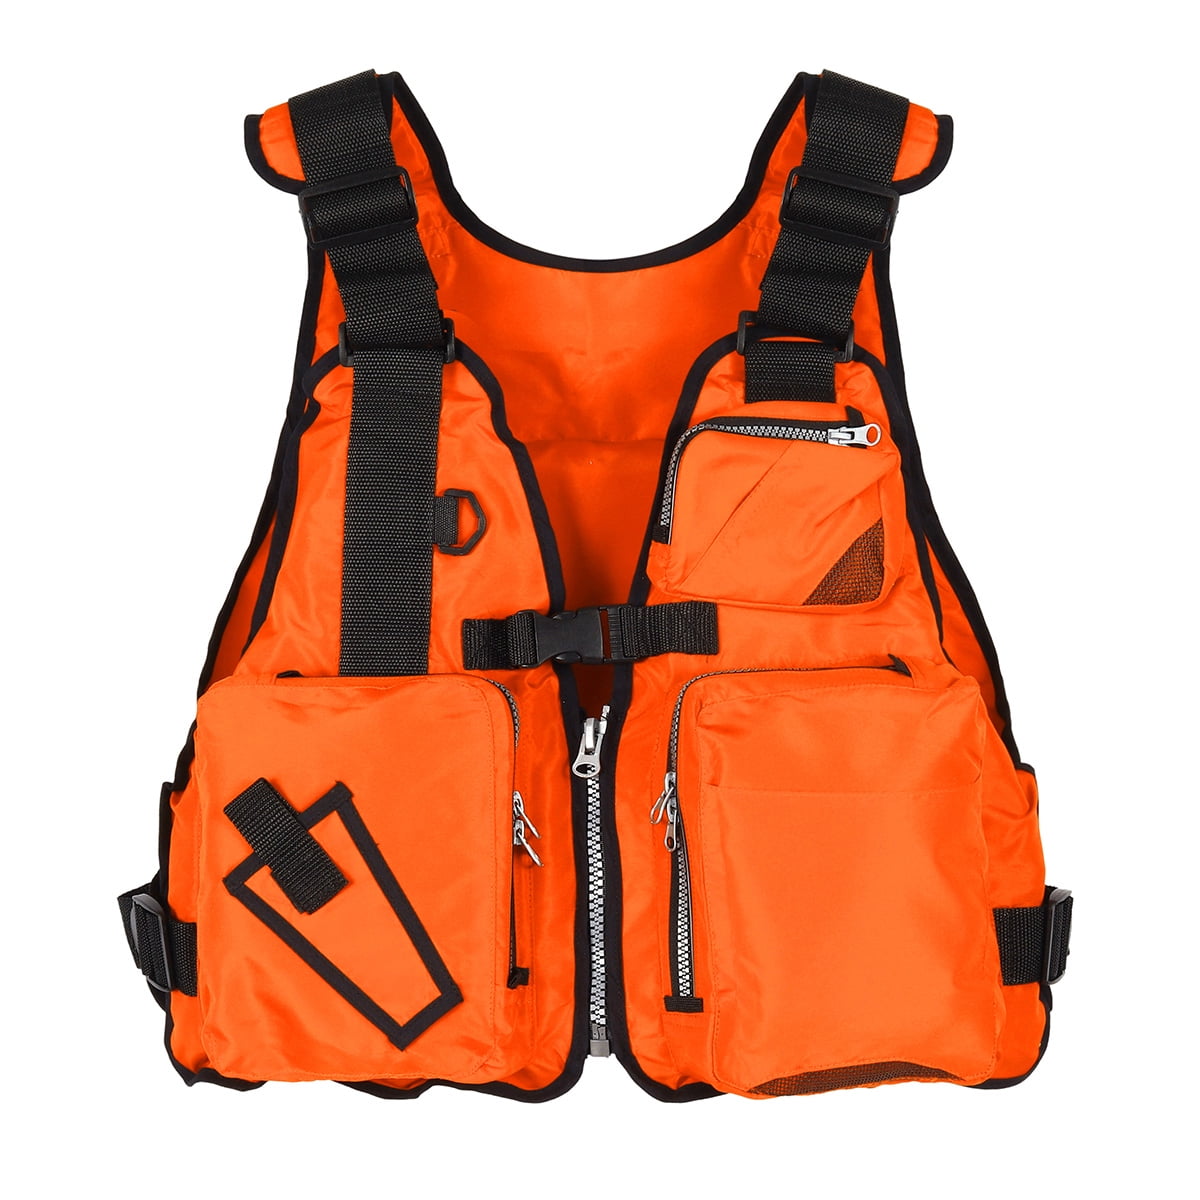 Adult Adjustable Buoyancy Aid Sailing Kayak Canoeing Fishing Life Jacket Vest 